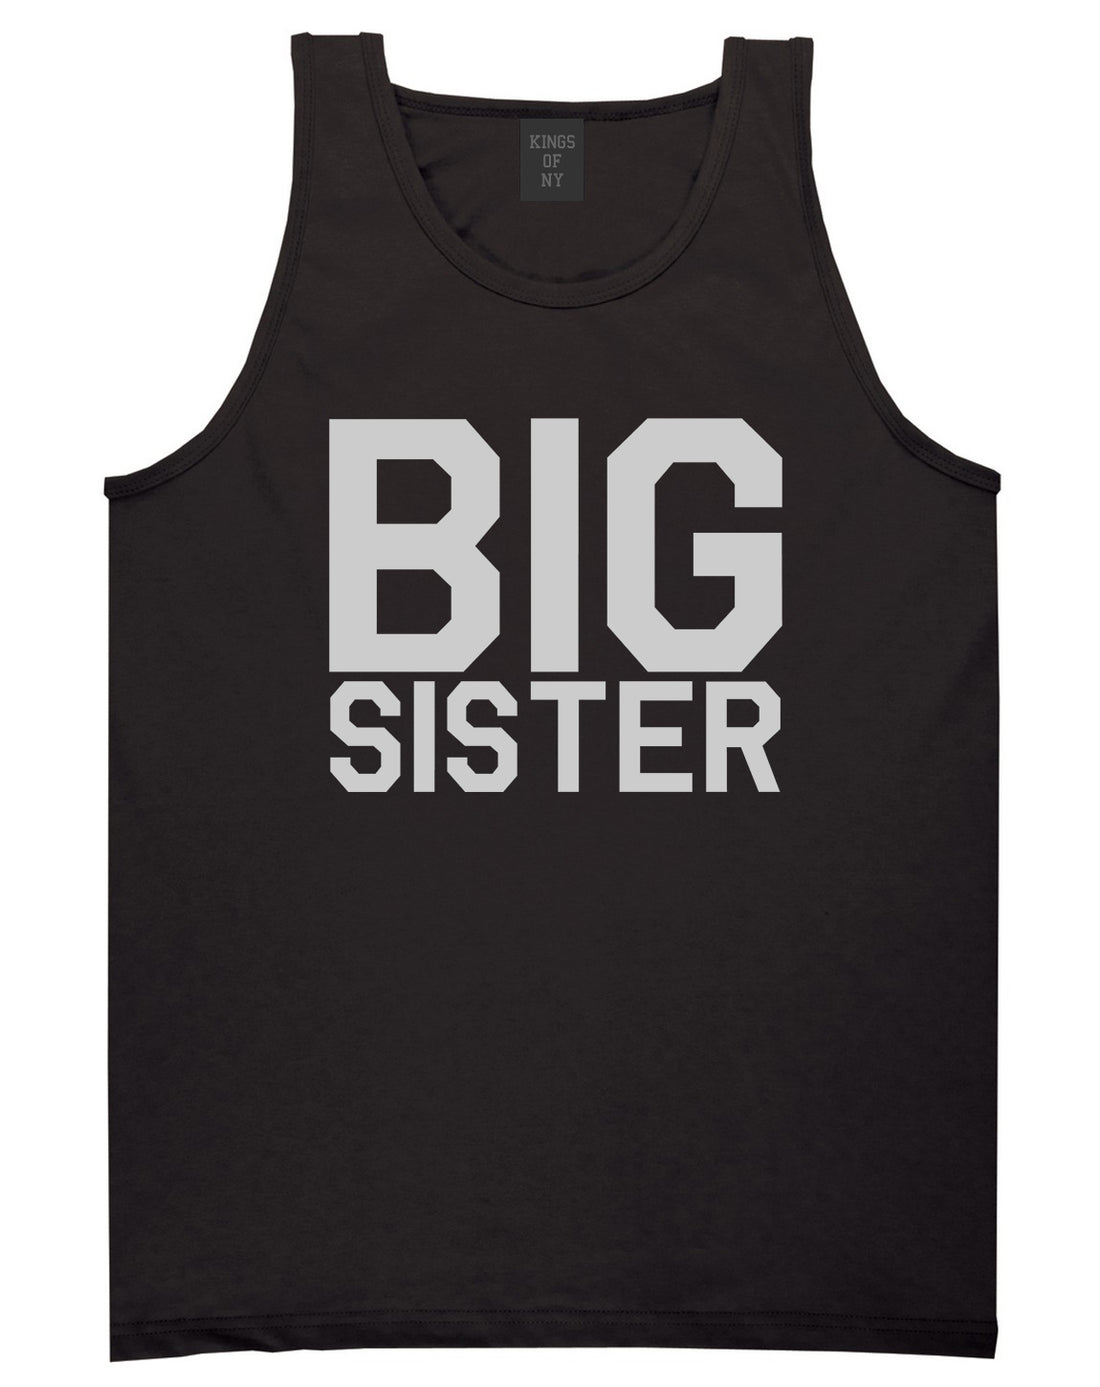 Big Sister Black Tank Top Shirt by Kings Of NY